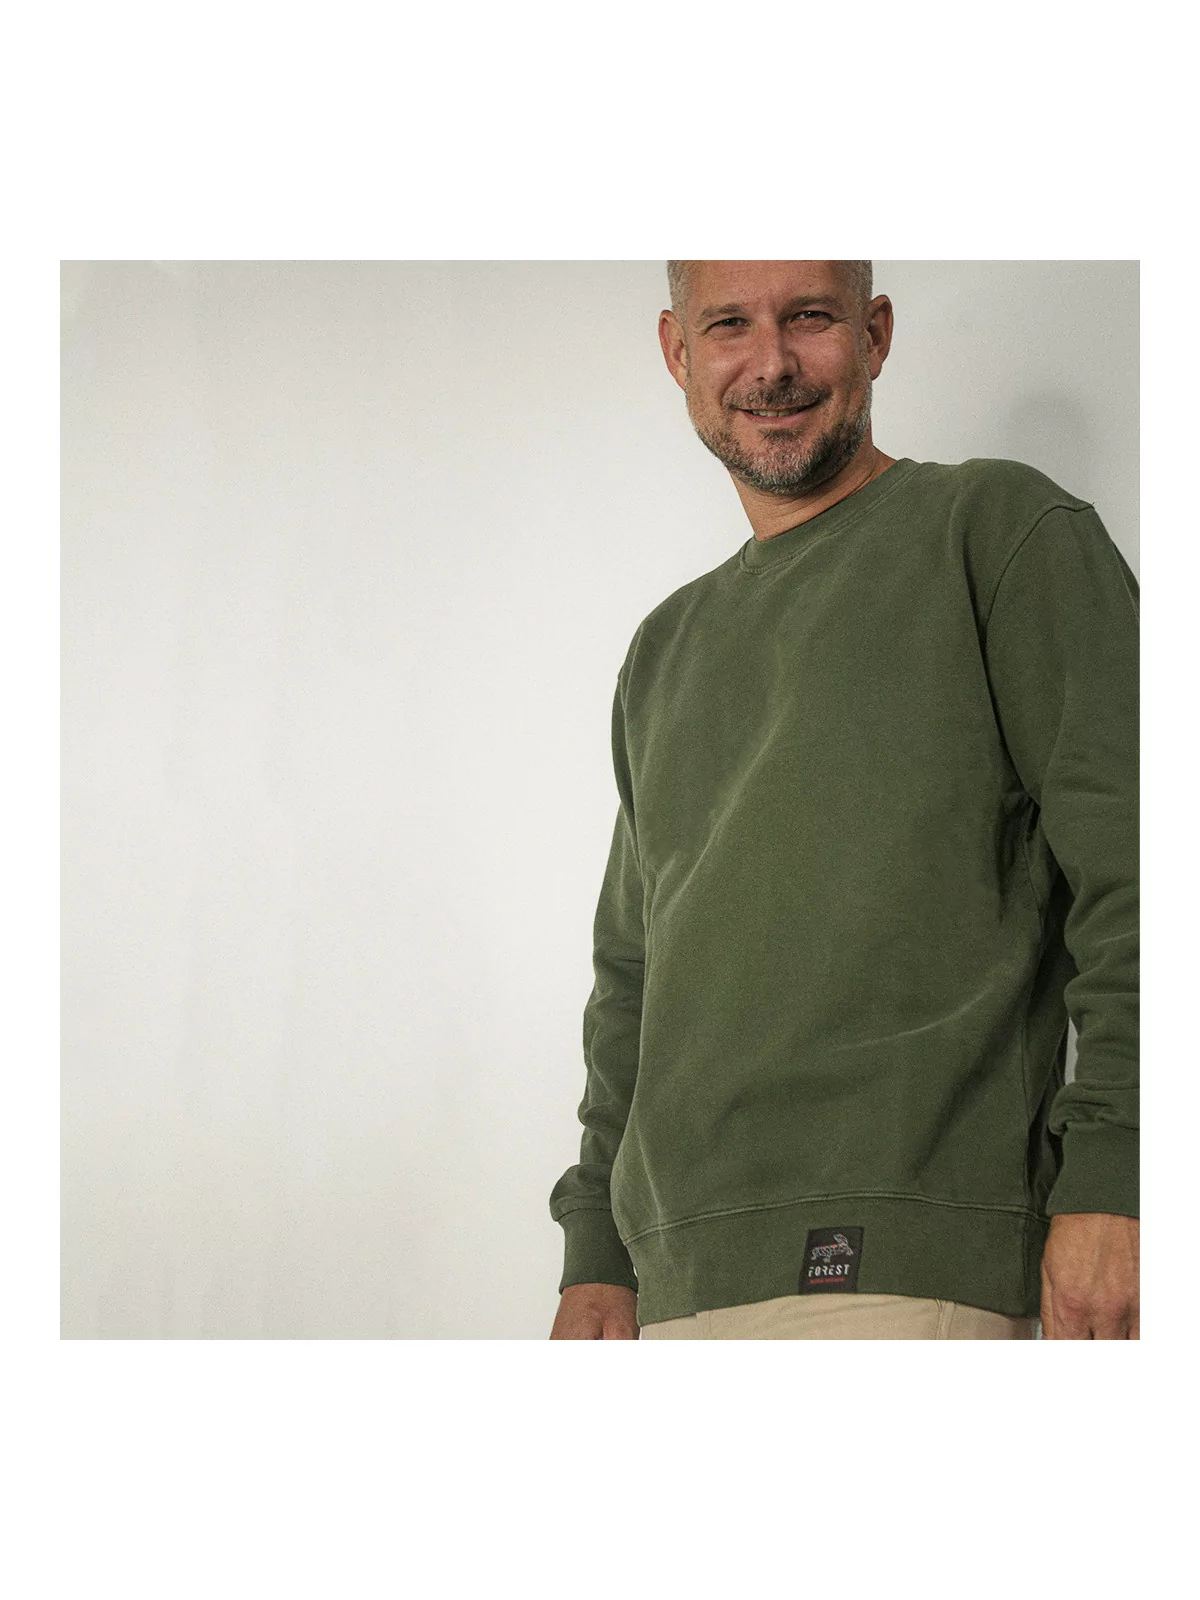 Sweat shirt coton biologique finition carbone touche doux